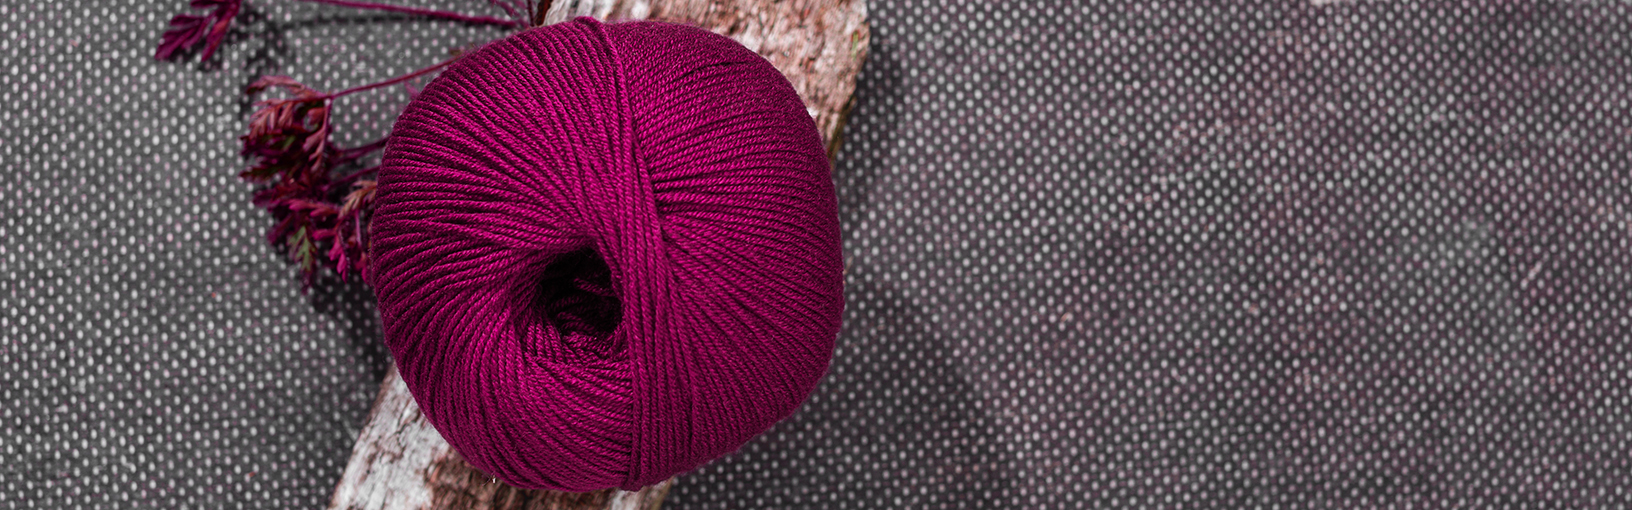 Visokokvalitetne pređe za pletenje, kukičanje i filc Lana Grossa Vune | LETNJIKOVAC